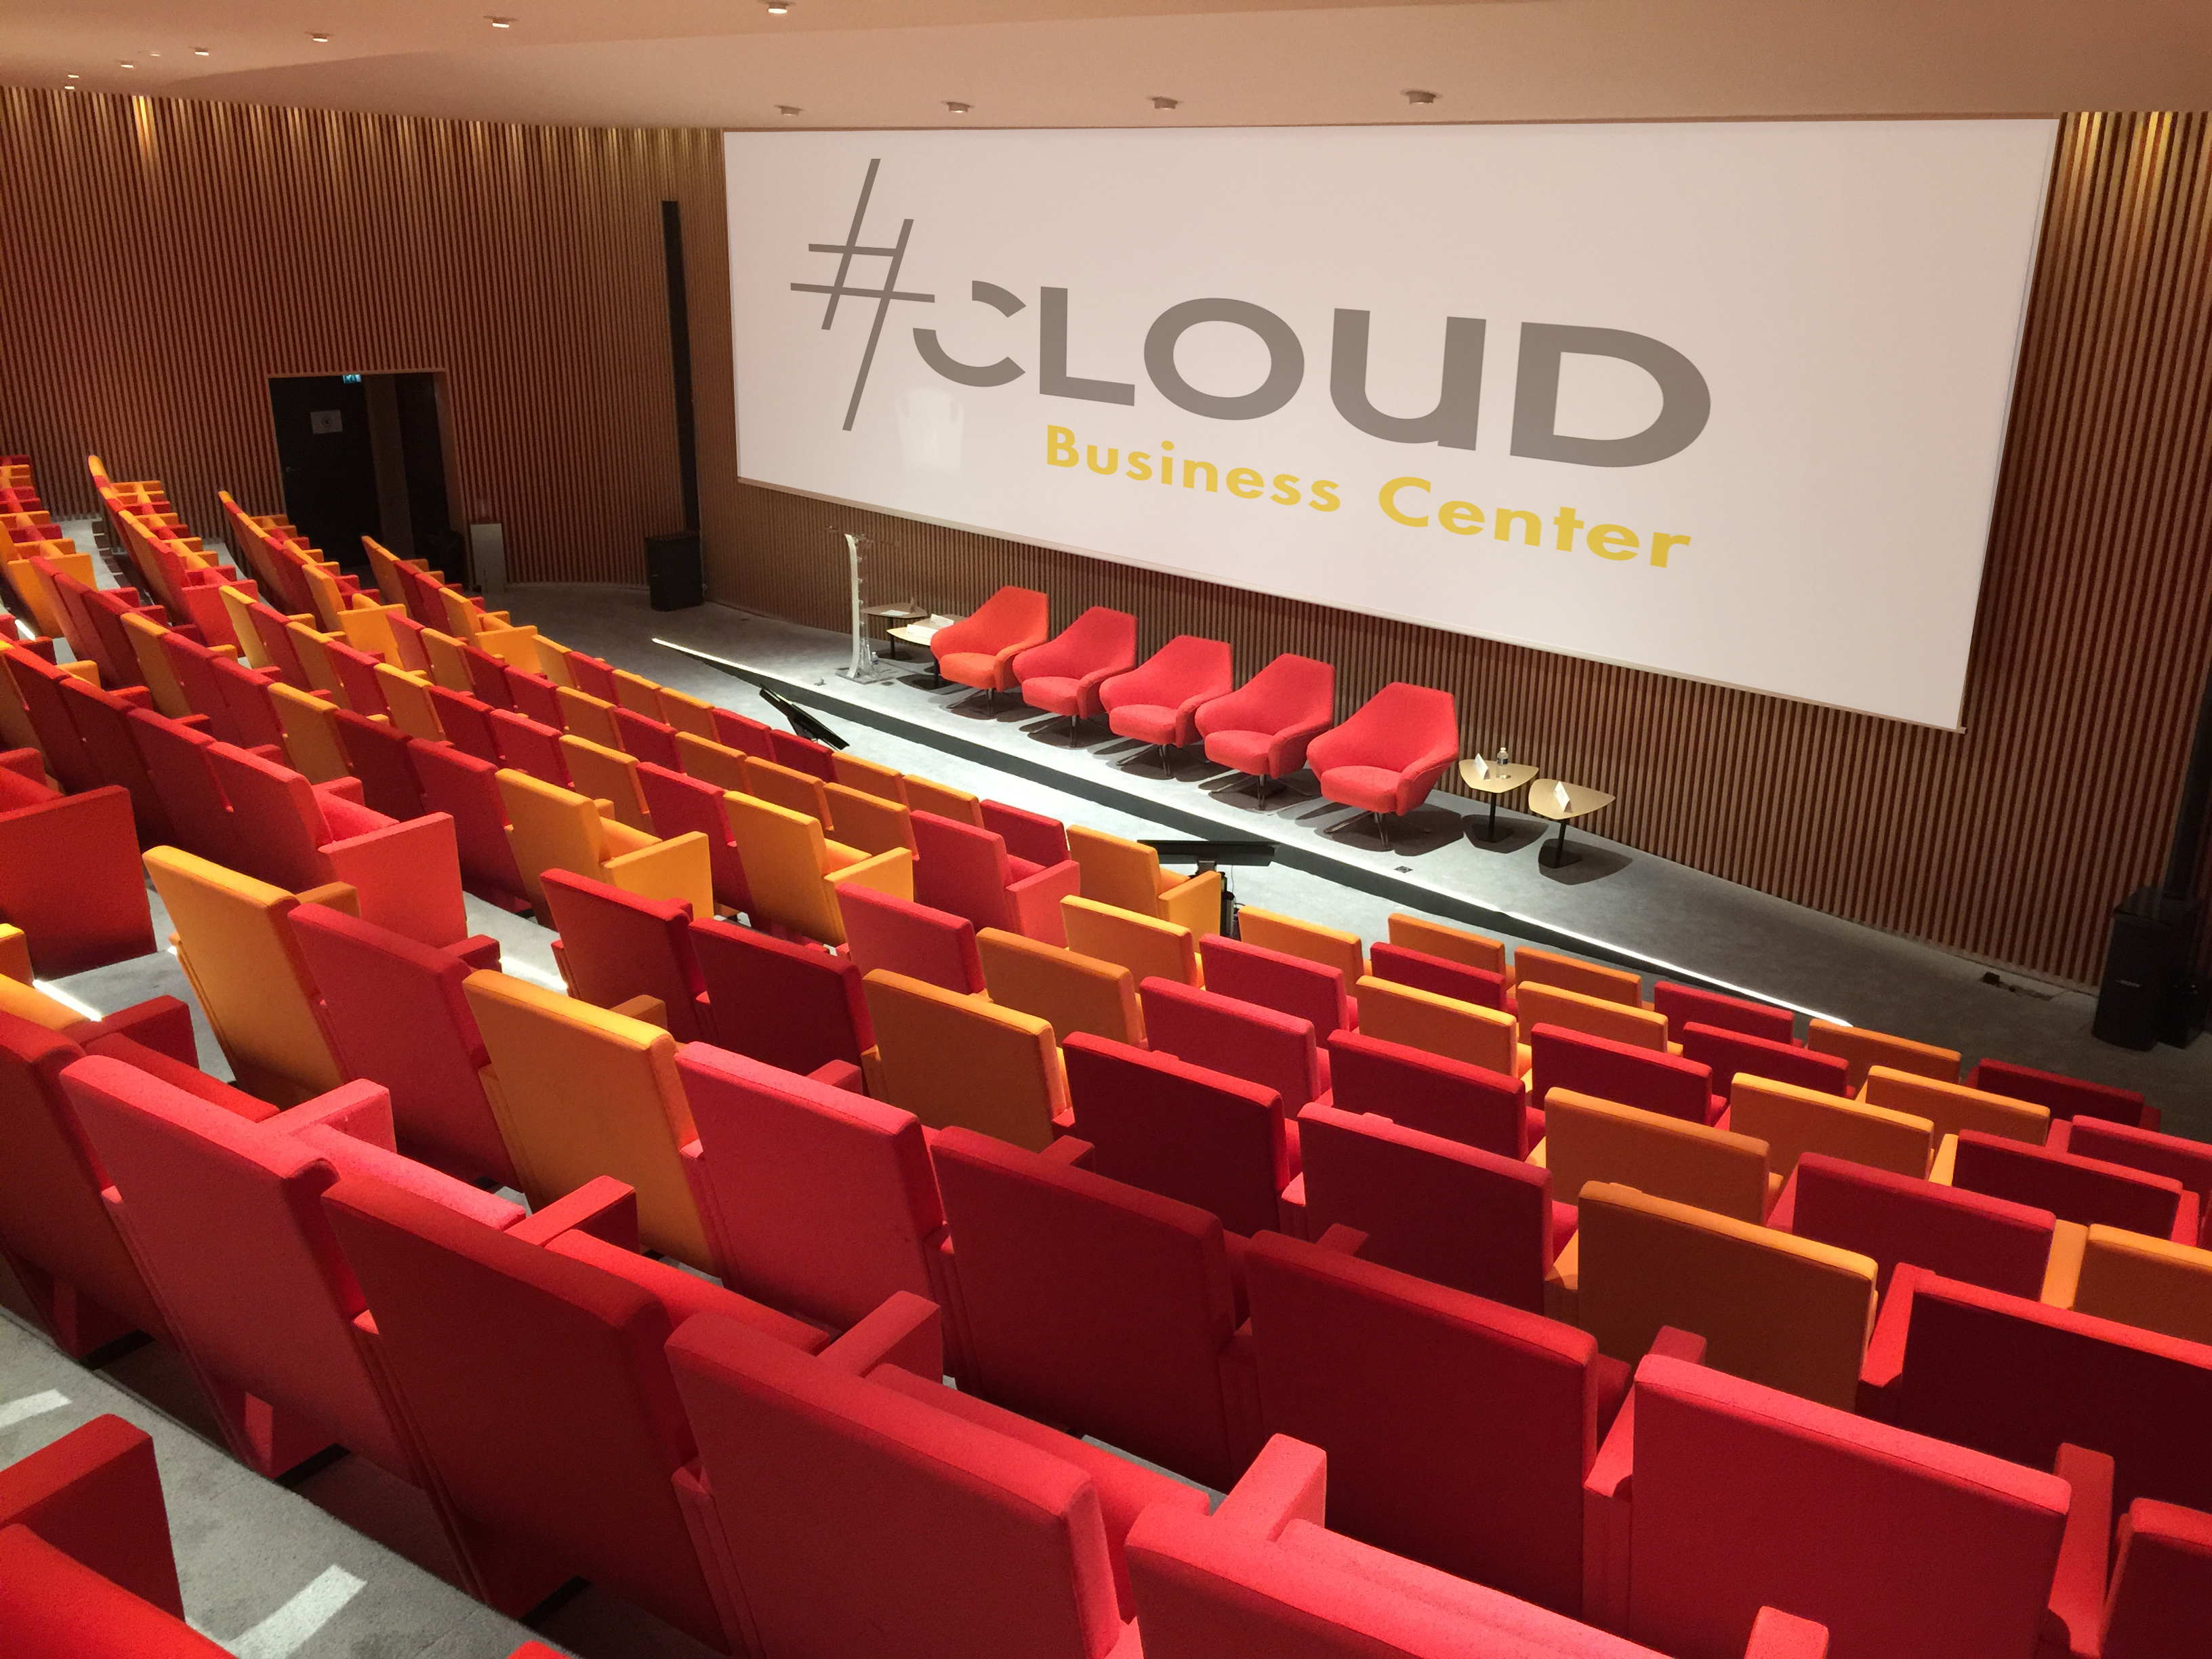 #Cloud Business Center